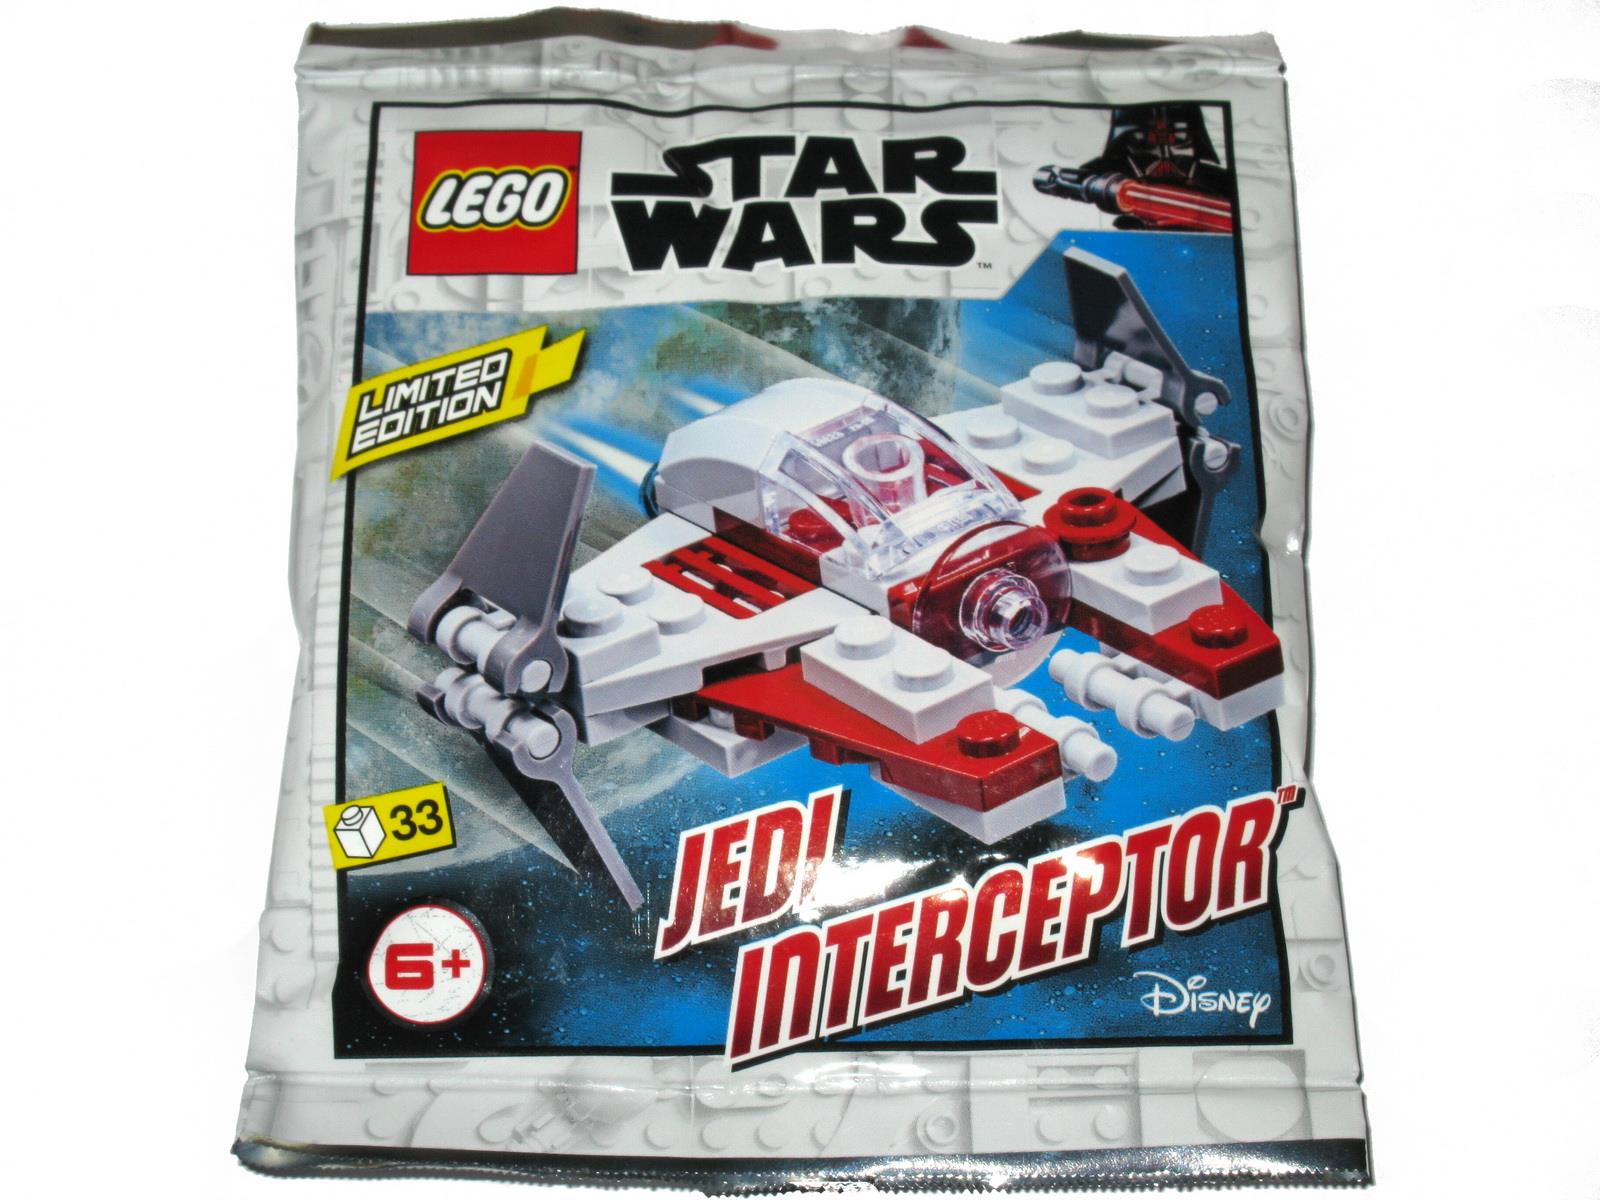 Jedi Interceptor Polybag 911952 Foil Pack New & Sealed Lego Star Wars